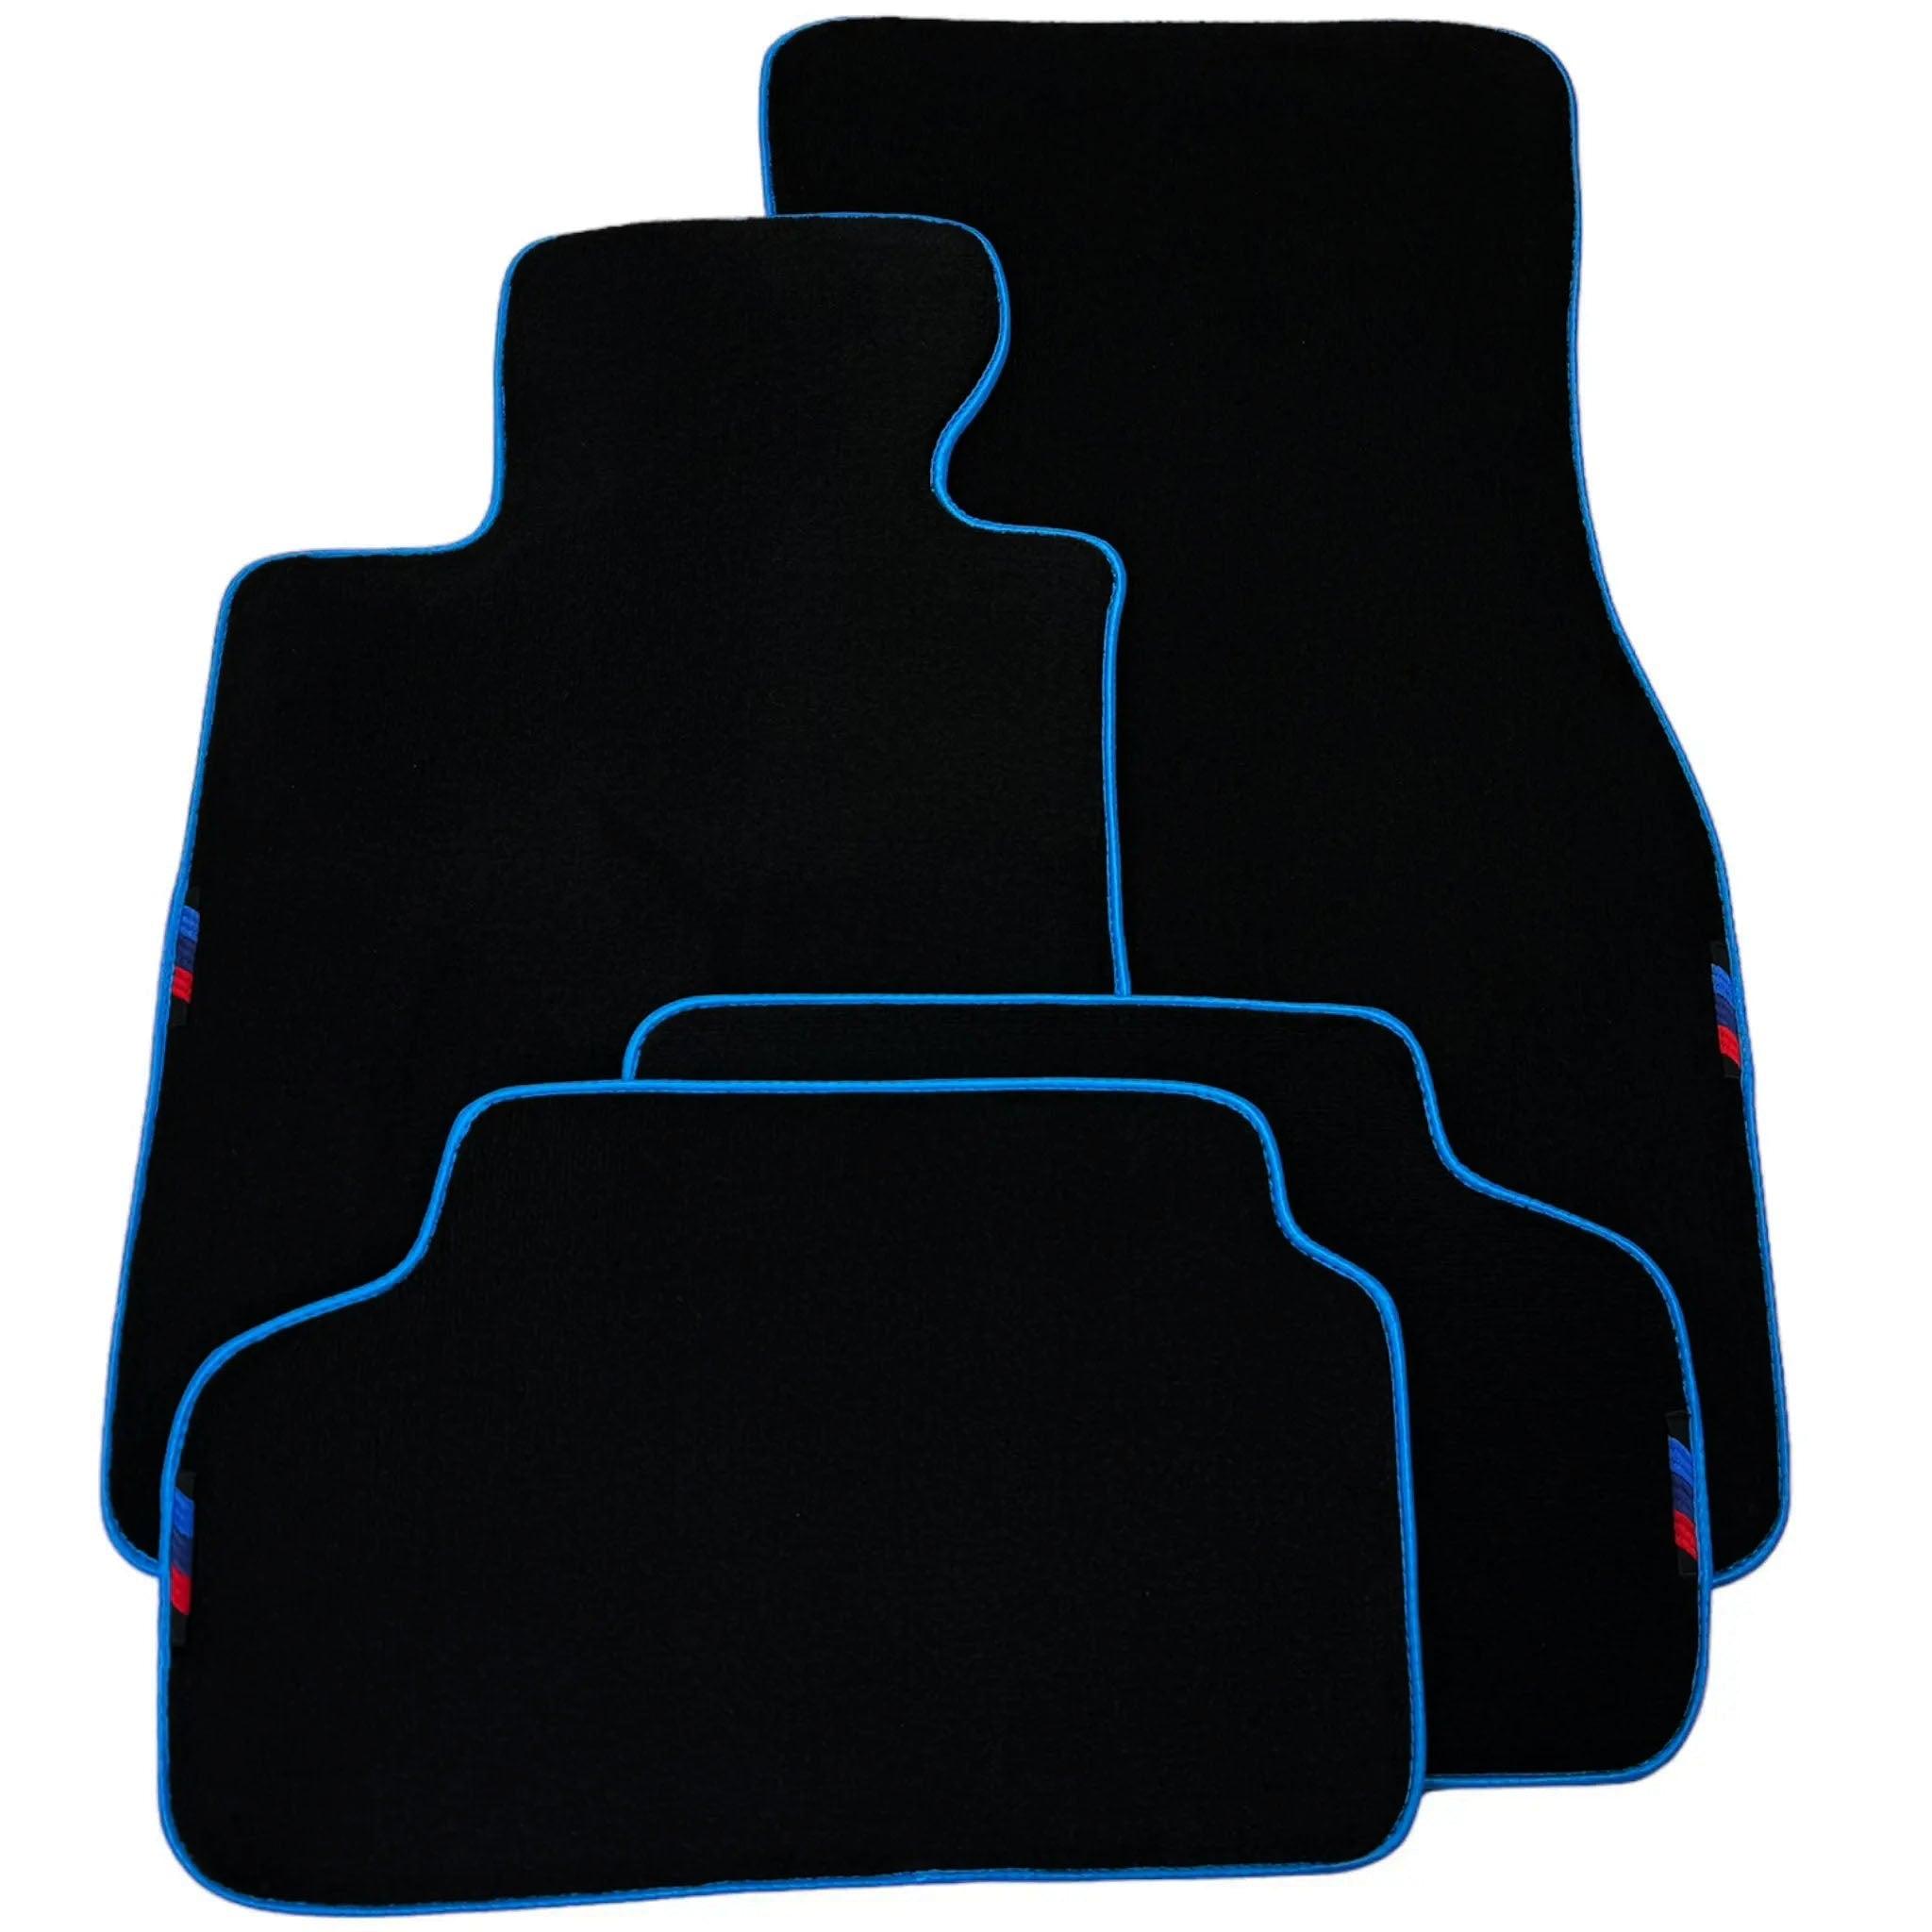 Black Floor Mats For BMW 8 Series G15 2-door Coupe | Sky Blue Trim